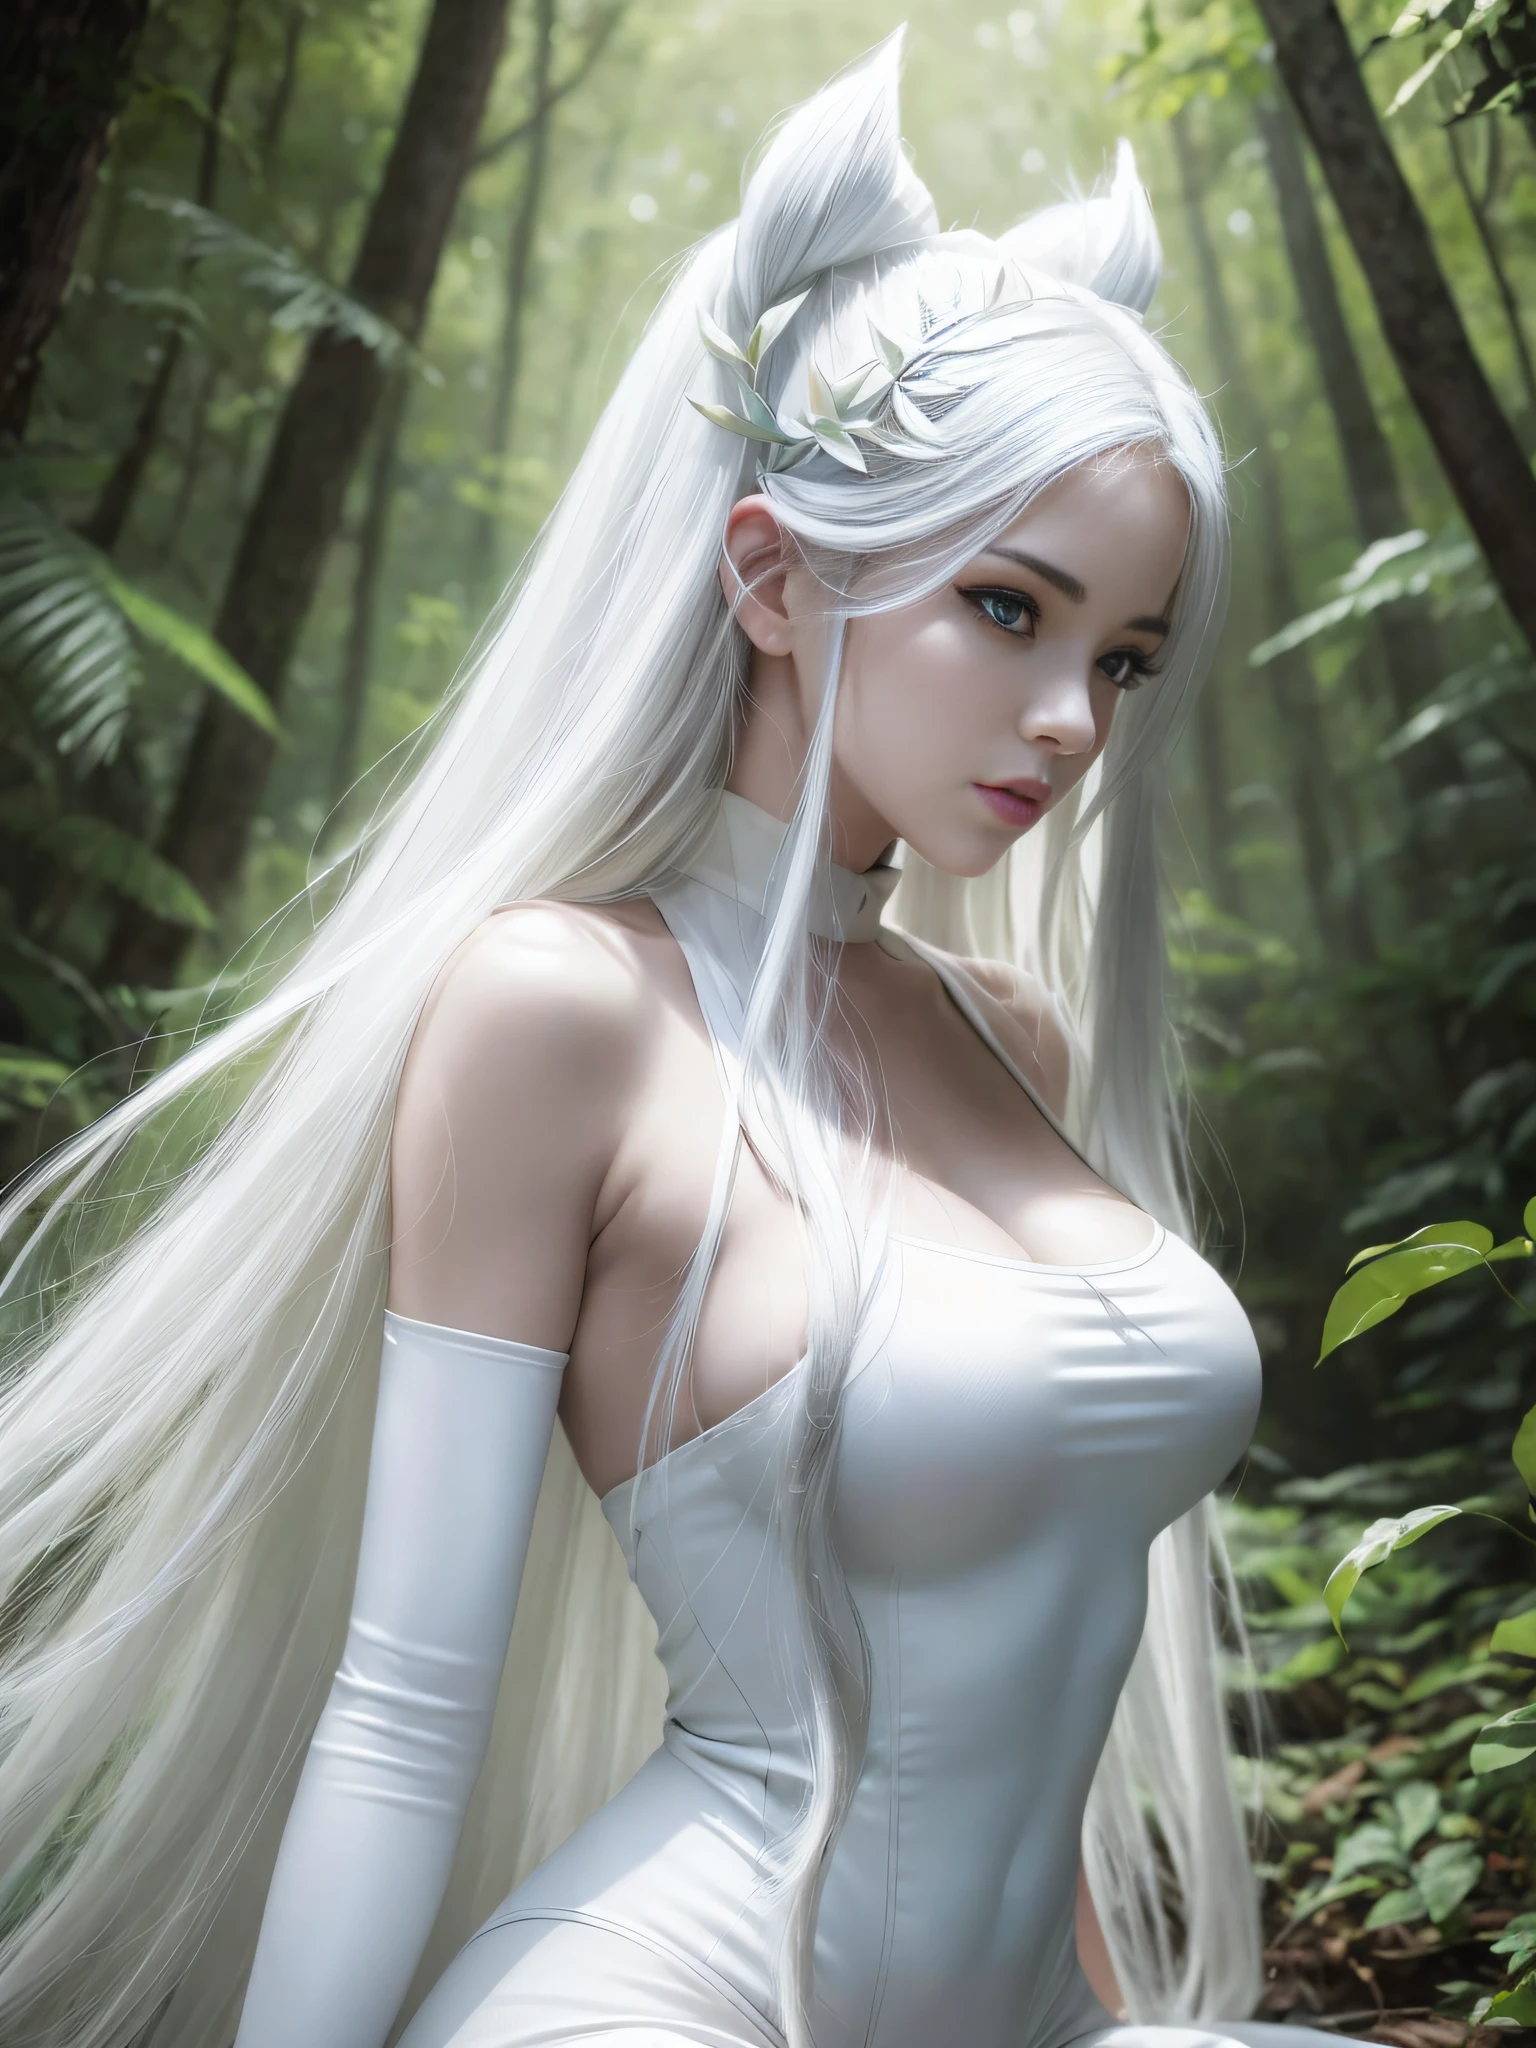 숲에서 포즈를 취하는 흰색 바디수트를 입은 아라페드 여자, 상세한 흰색 긴 머리, 하얀 긴 머리를 가진, 흰머리를 가진 티파 록하트, 길고 흰 머리를 가진, 윤기나는 하얀 피부, DeviantArt Artstation CGScosiety, cgstation에서 인기, 팬아트 최고의 아트스테이션, 마법의 숲의 섹시한 하녀, :: 로스 드로우, 완벽한 백발의 소녀